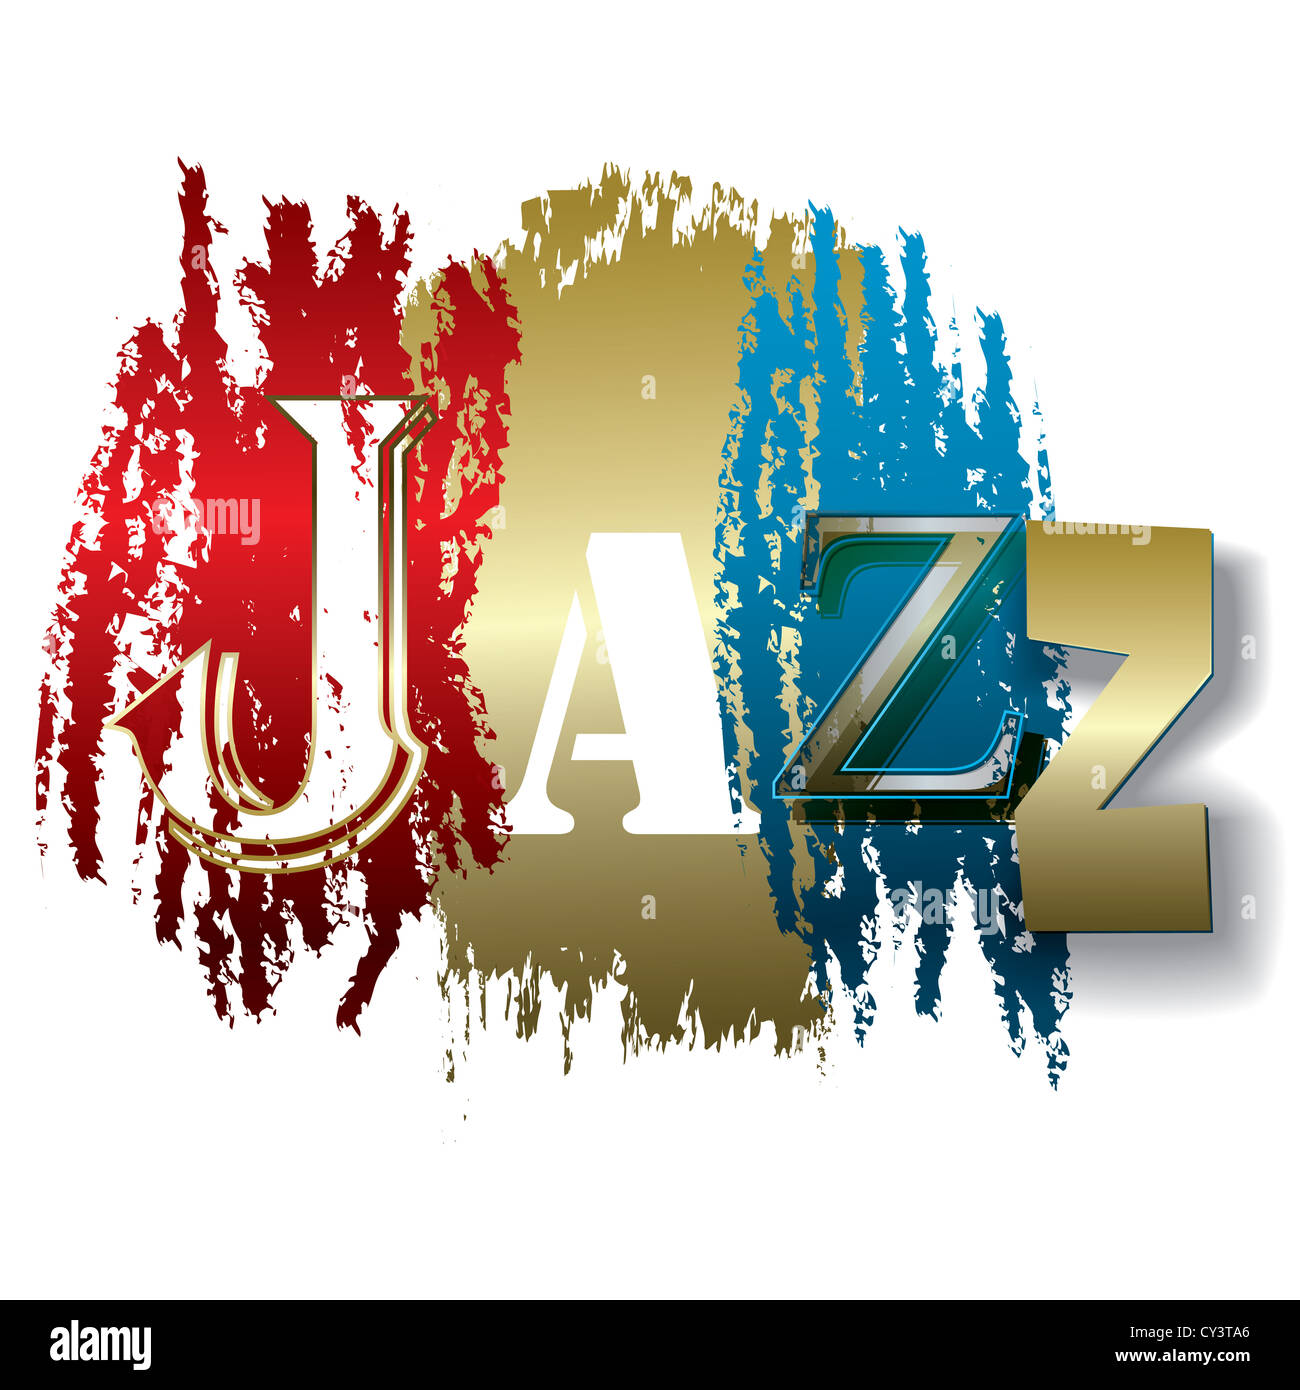 Jazz mot isolé sur fond blanc Banque D'Images